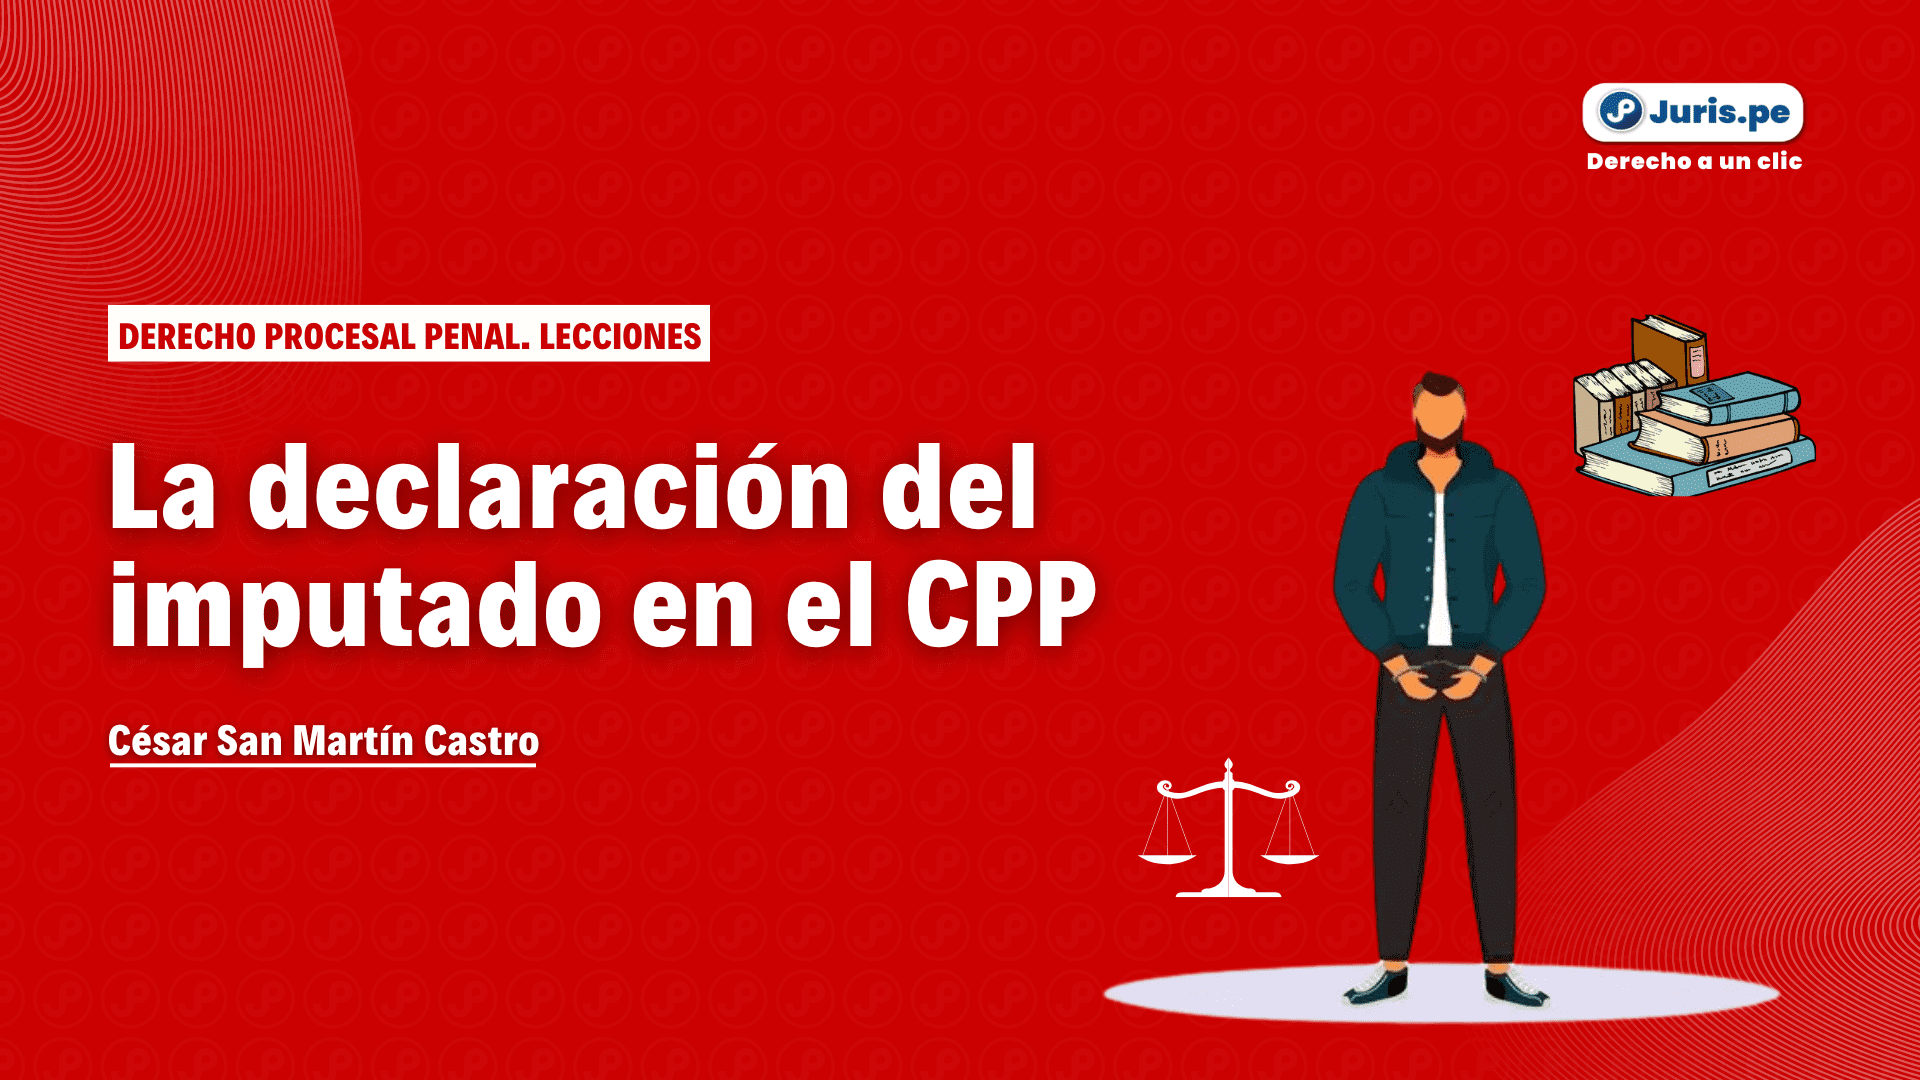 La declaración del imputado en el proceso penal peruano. Bien explicado por César San Martín